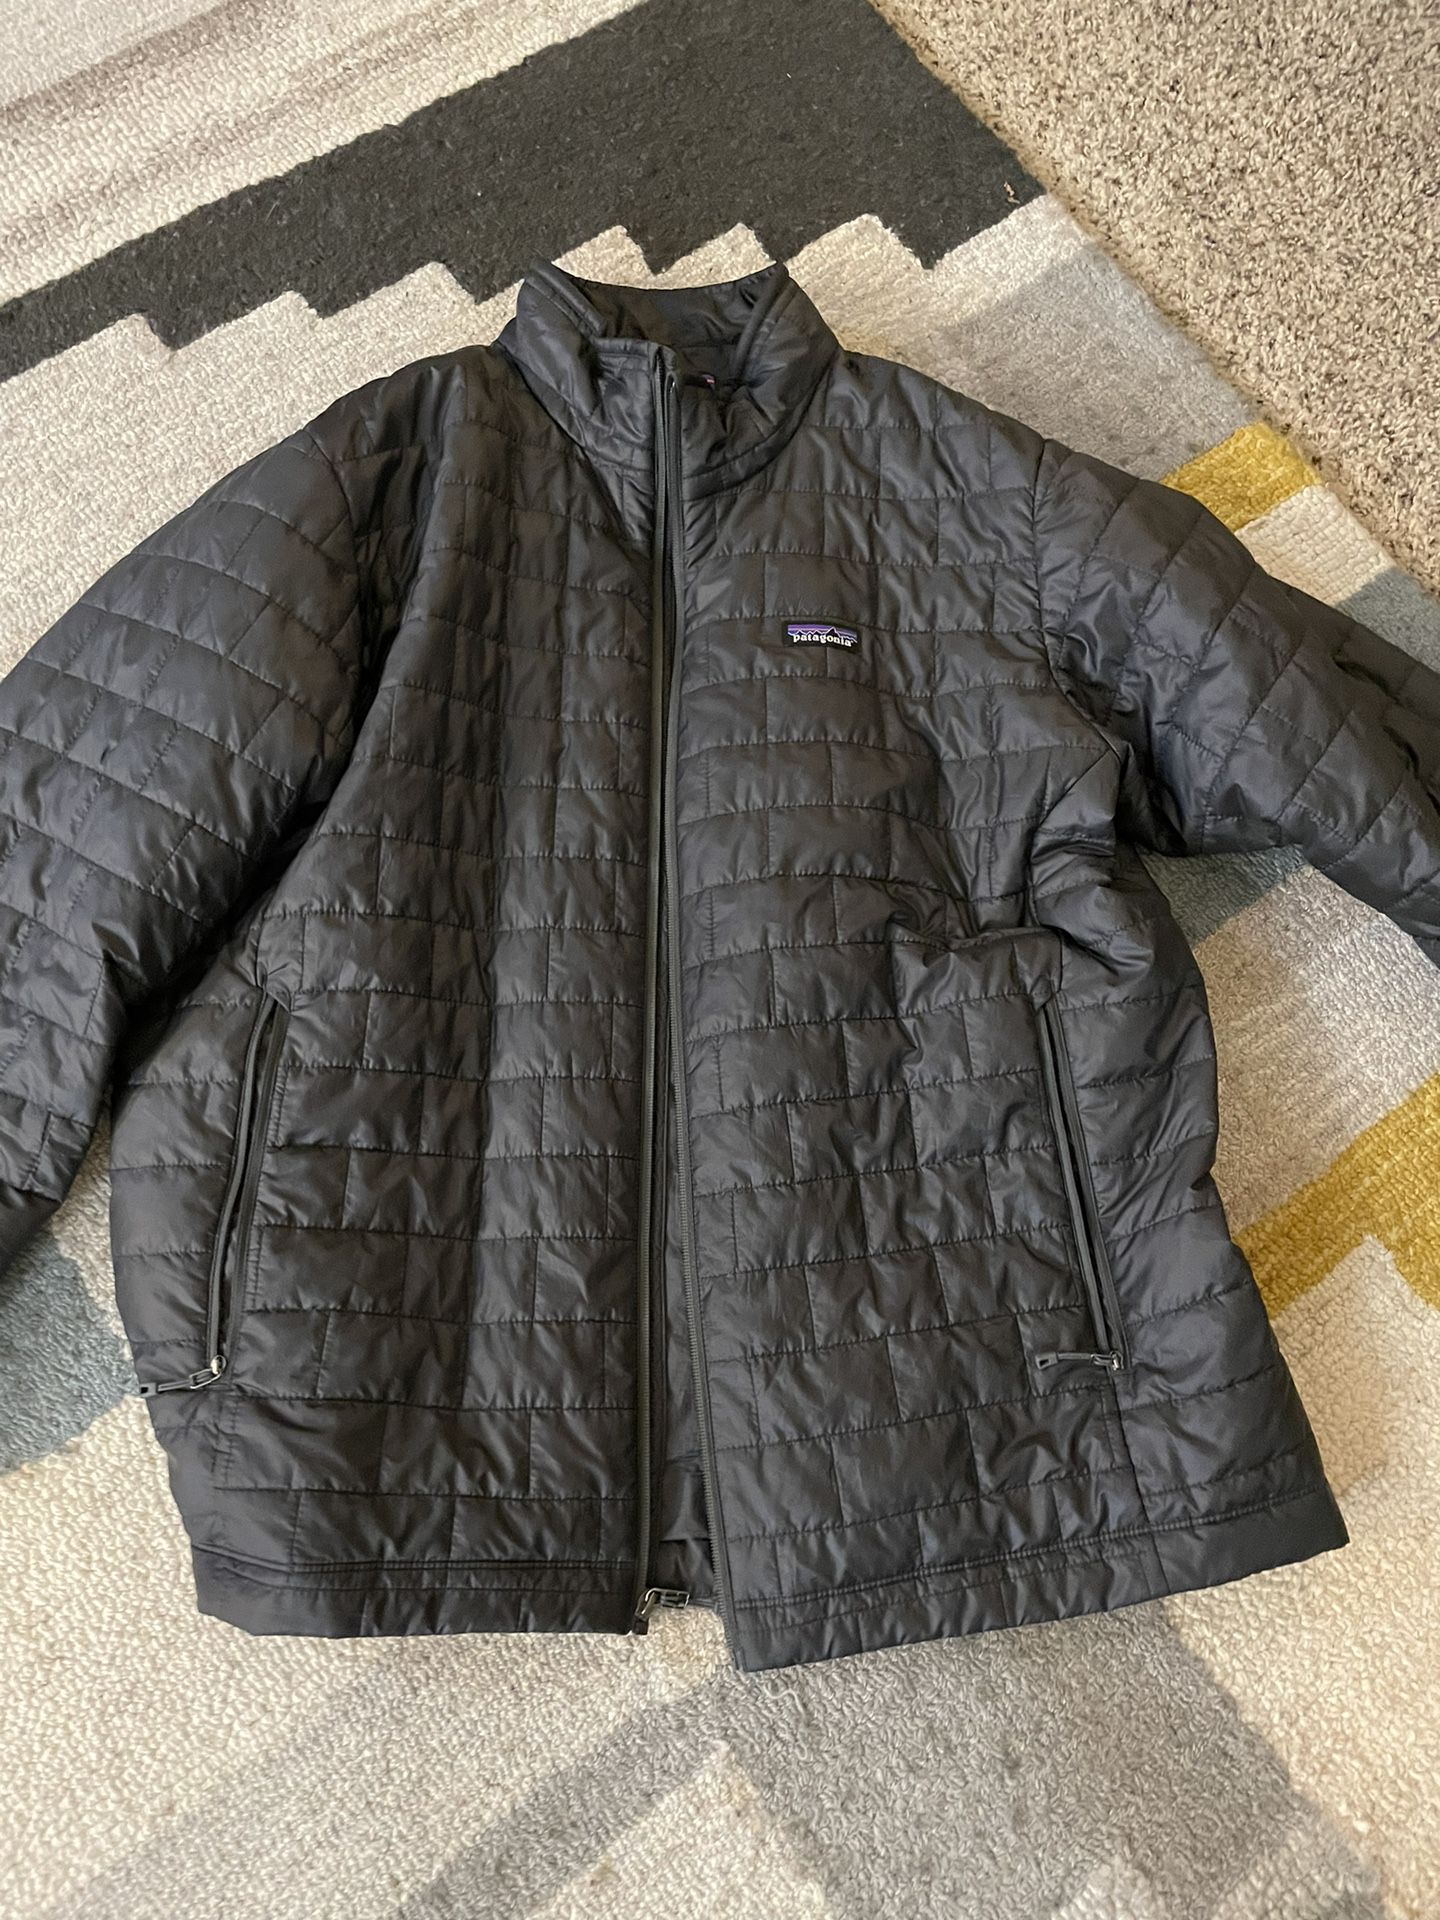 Men’s Patagonia Puffer Jacket